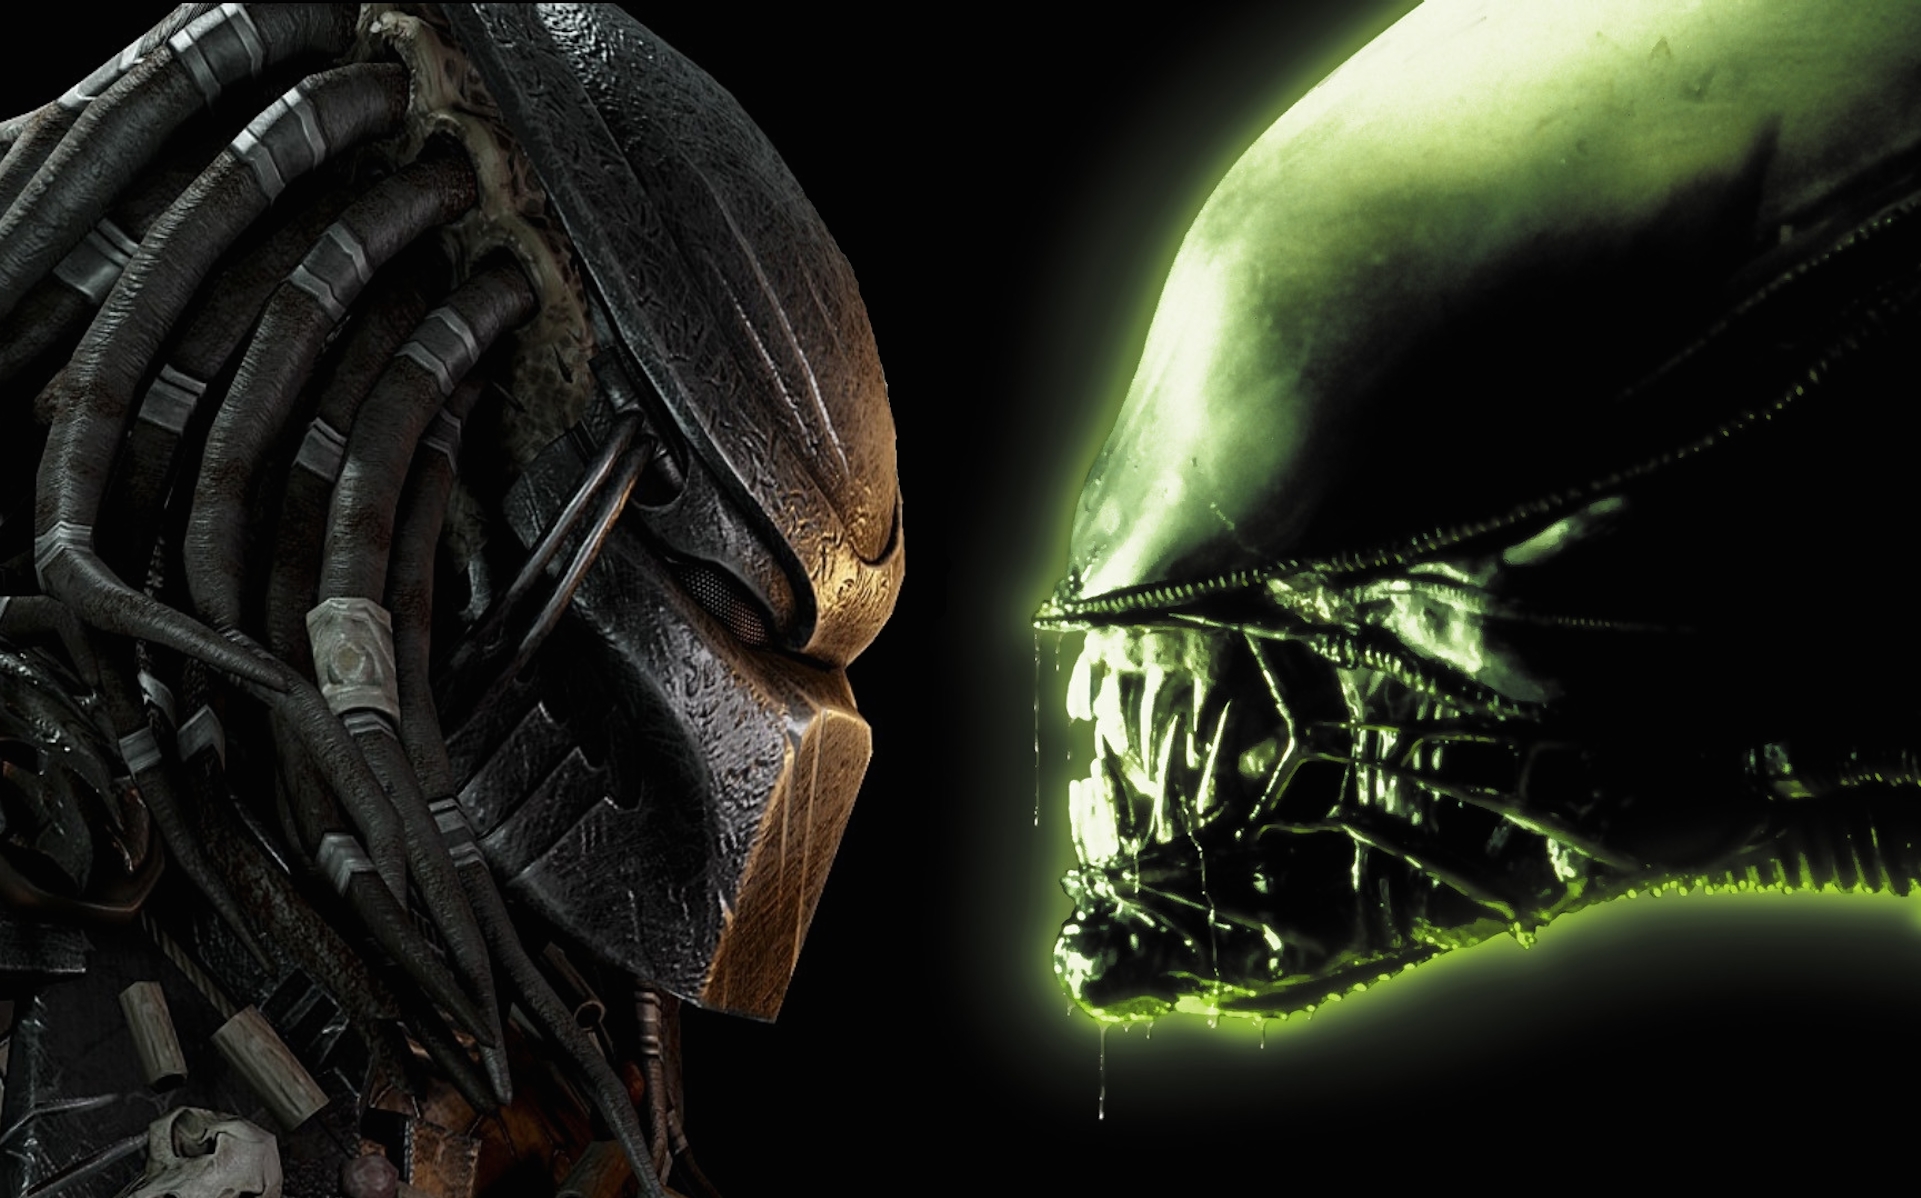 download alien versus predator